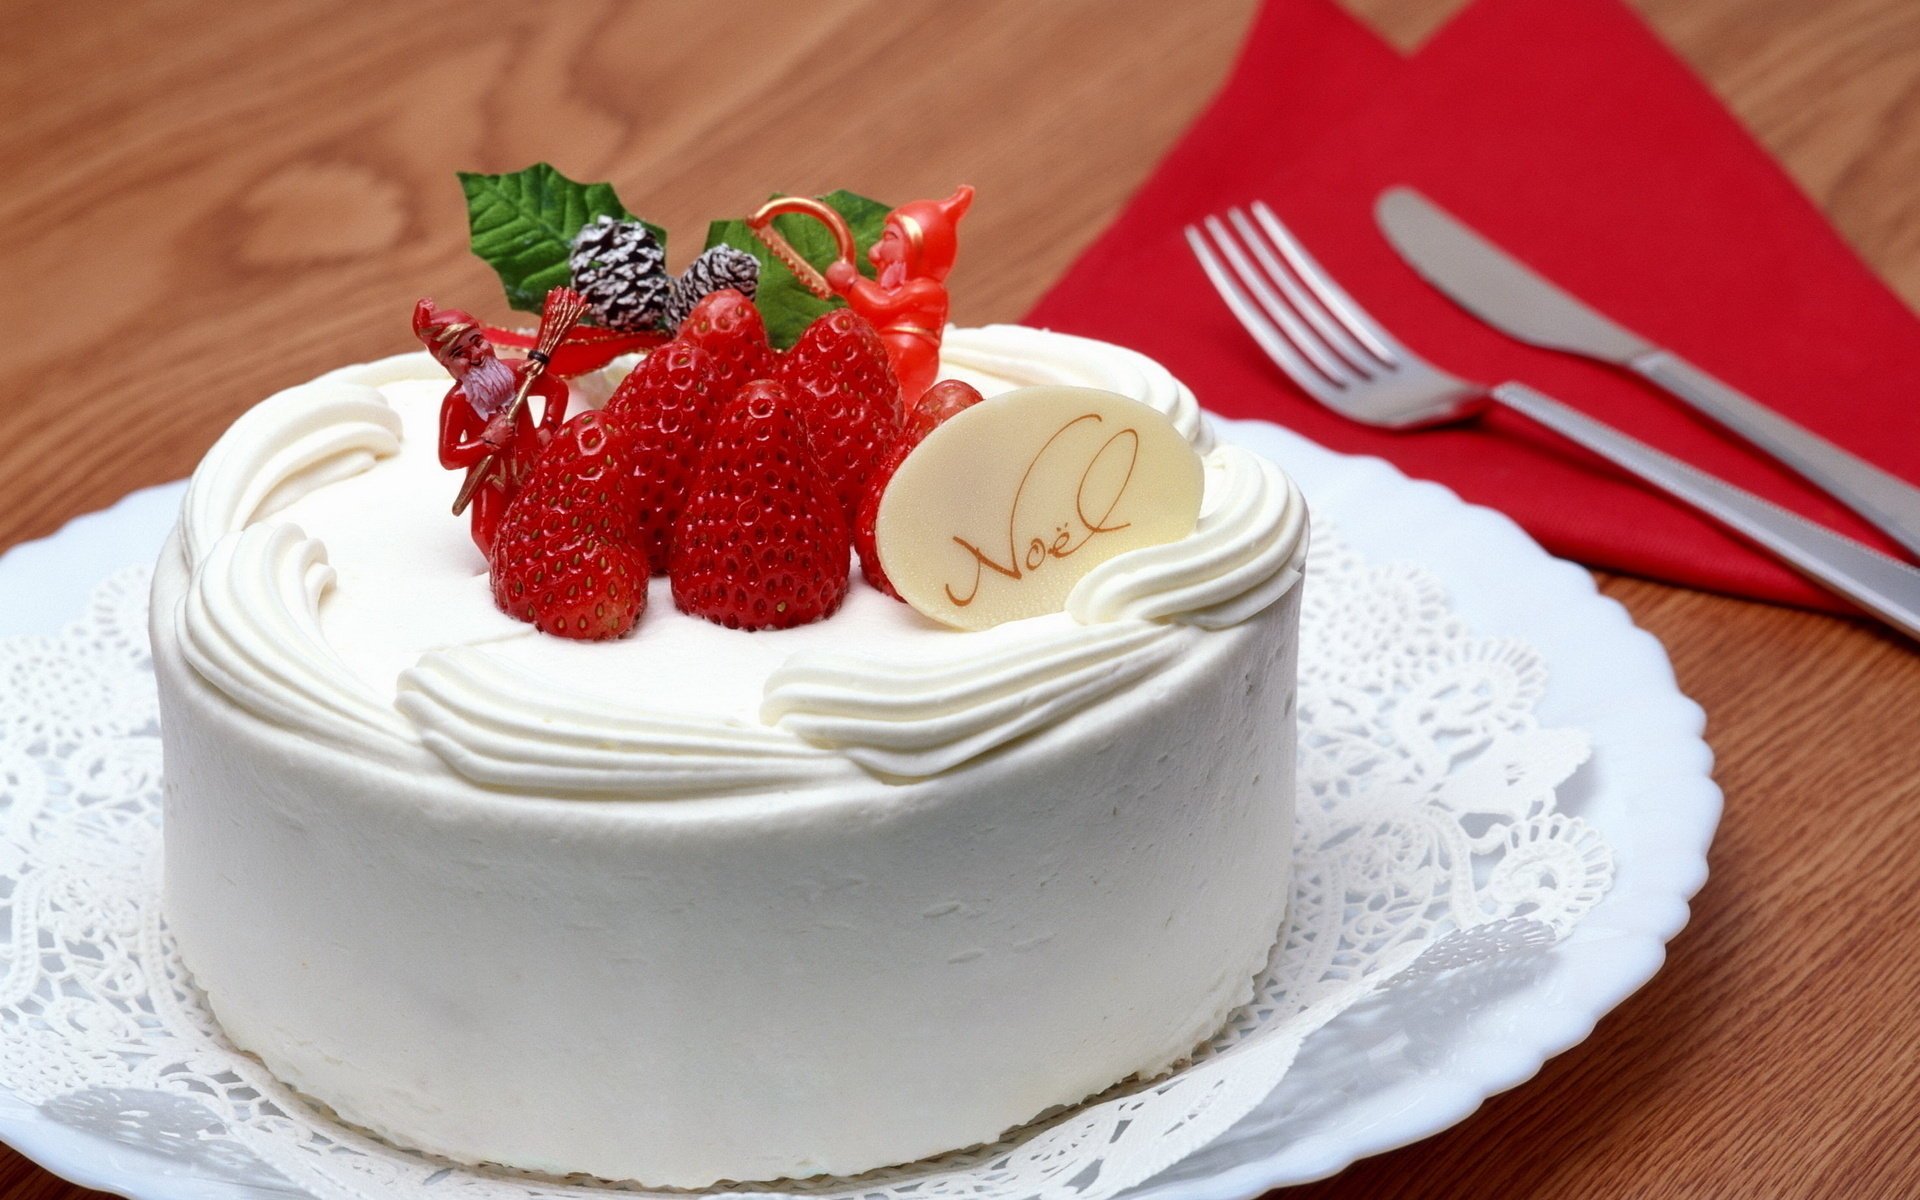 Красивое пирожное с ягодами на тарелке